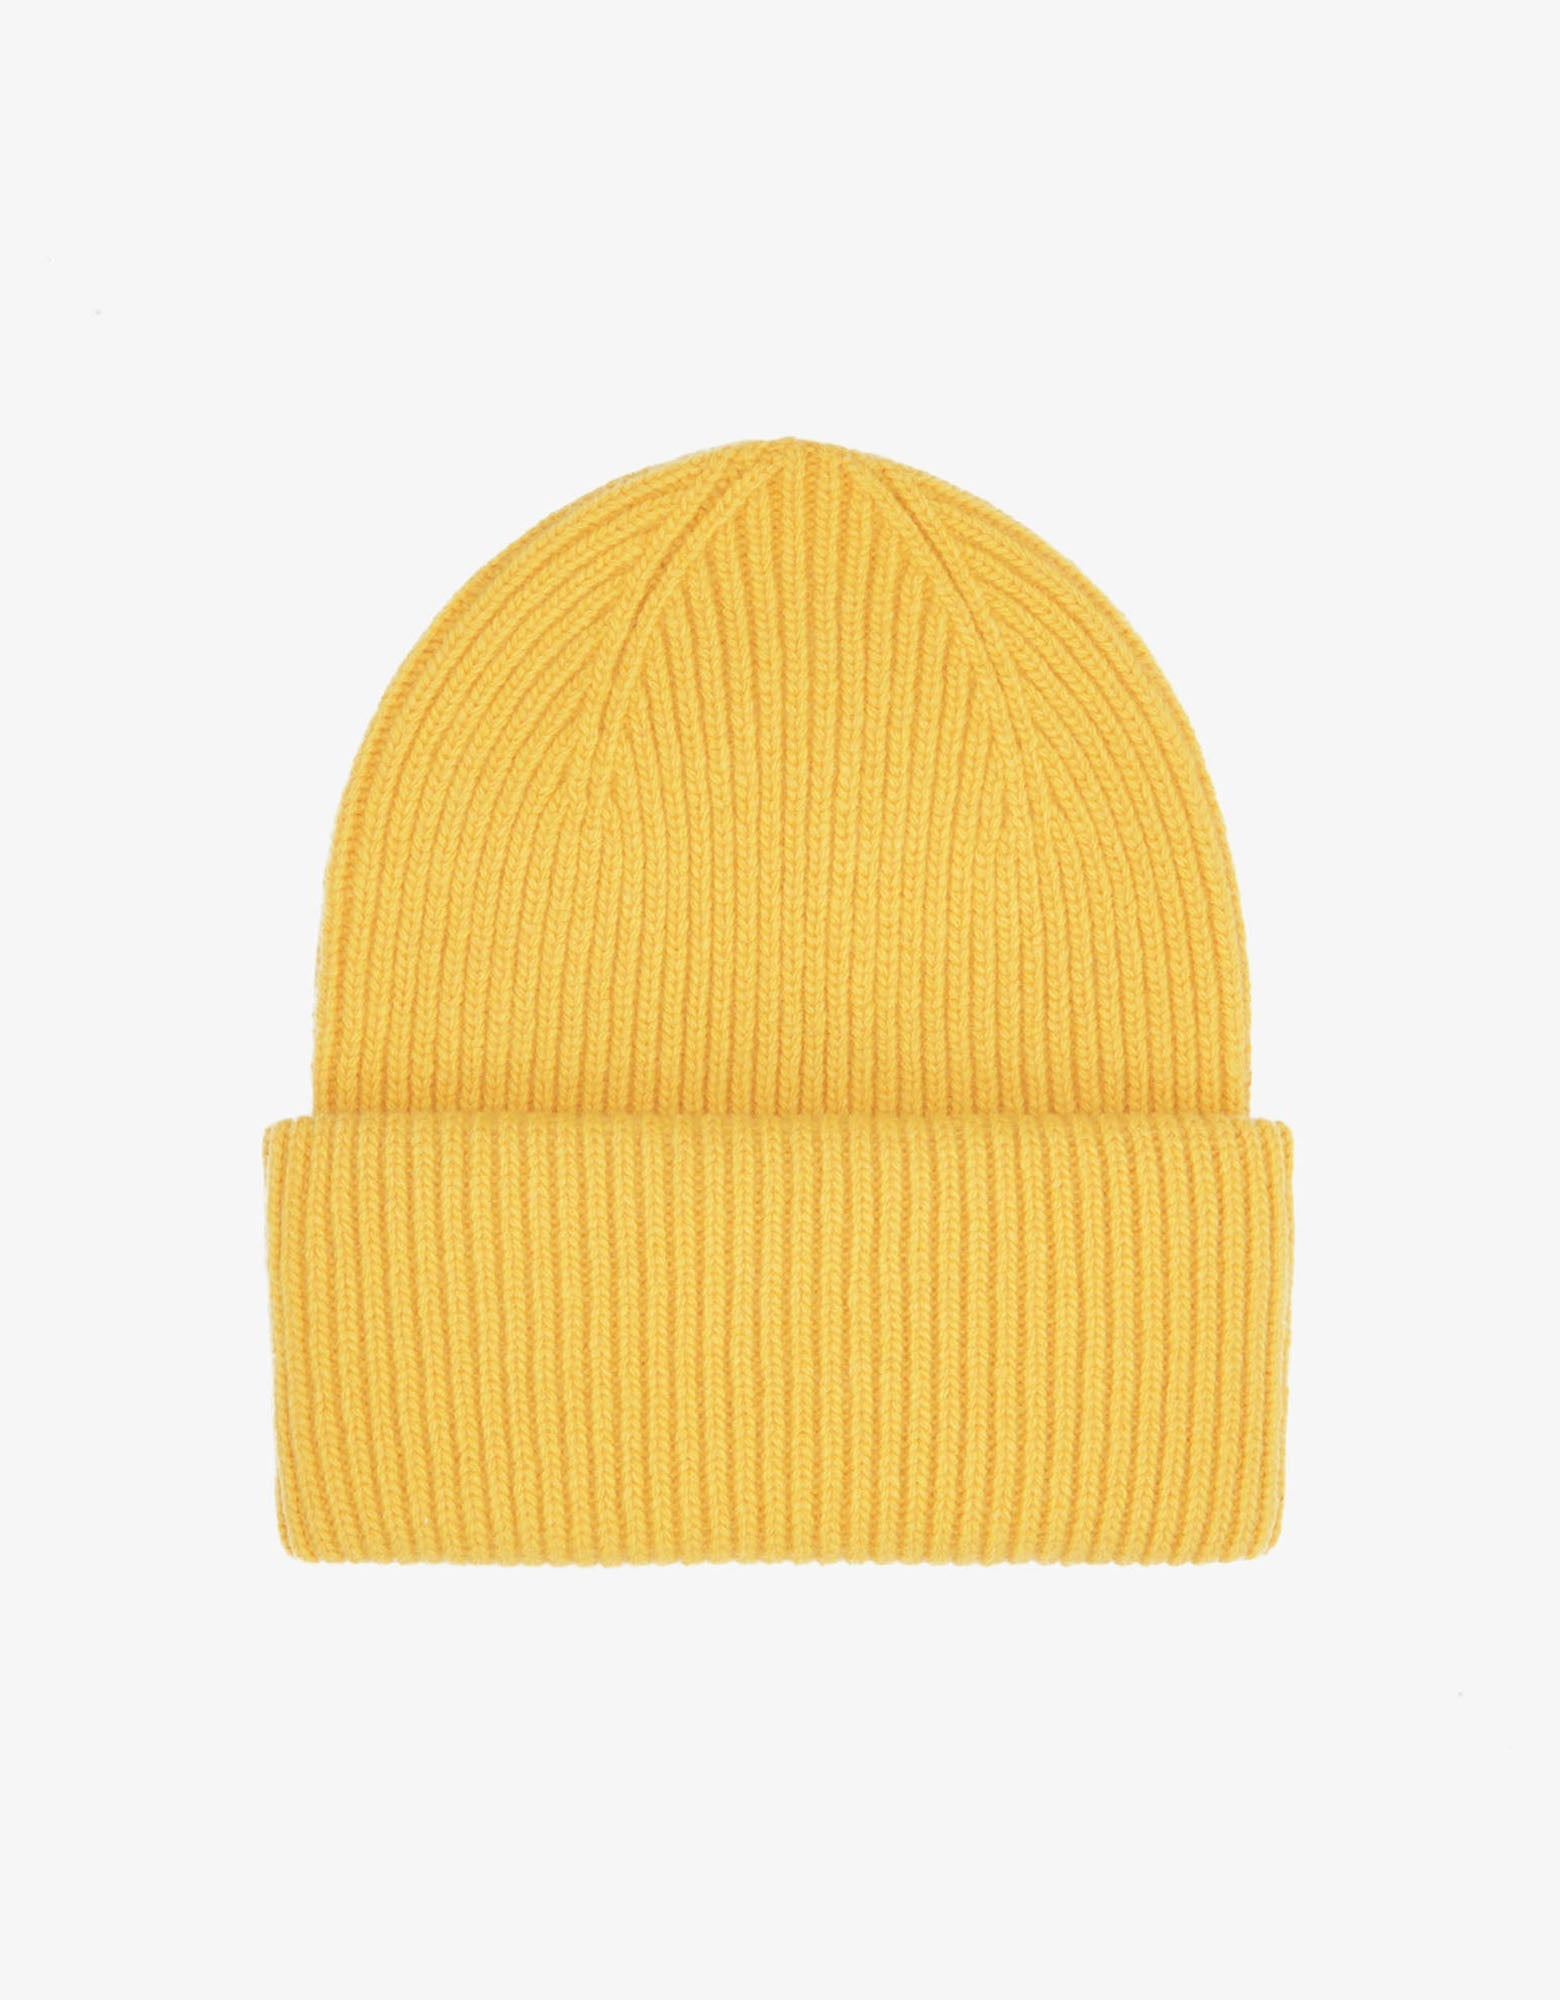 Merino Wool Hat - Lemon Yellow